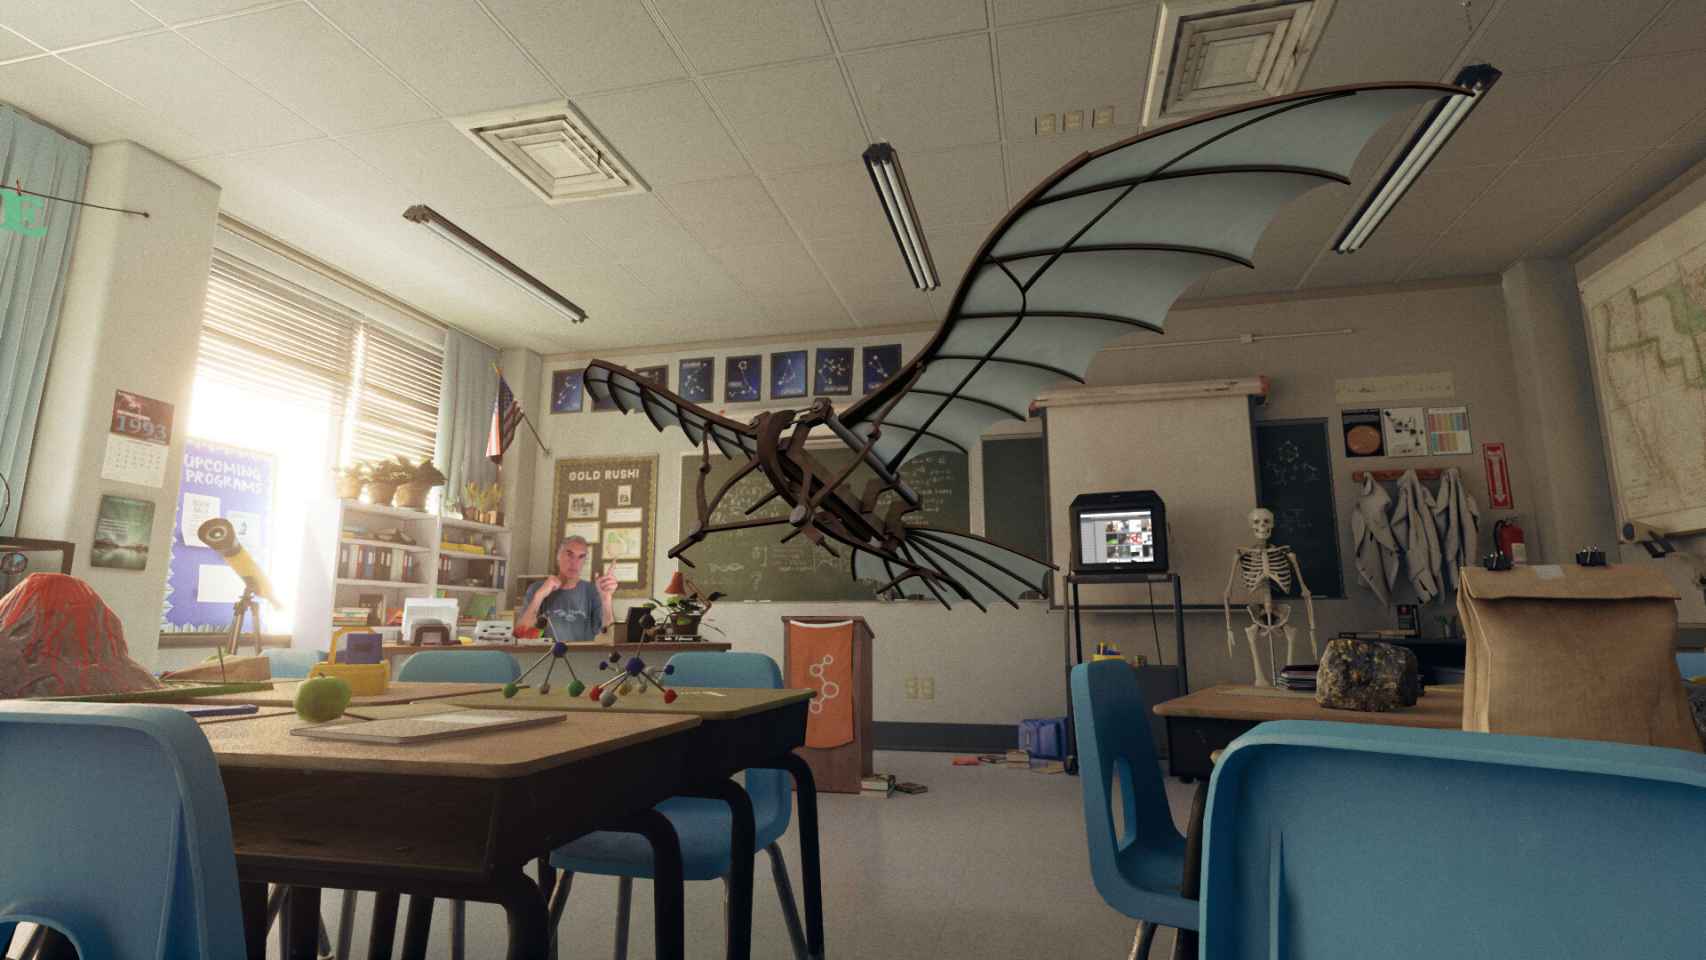 Ricardo Montesa, CEO de Brainstorm, convierte su despacho en el aula de una escuela con sus pupitres.